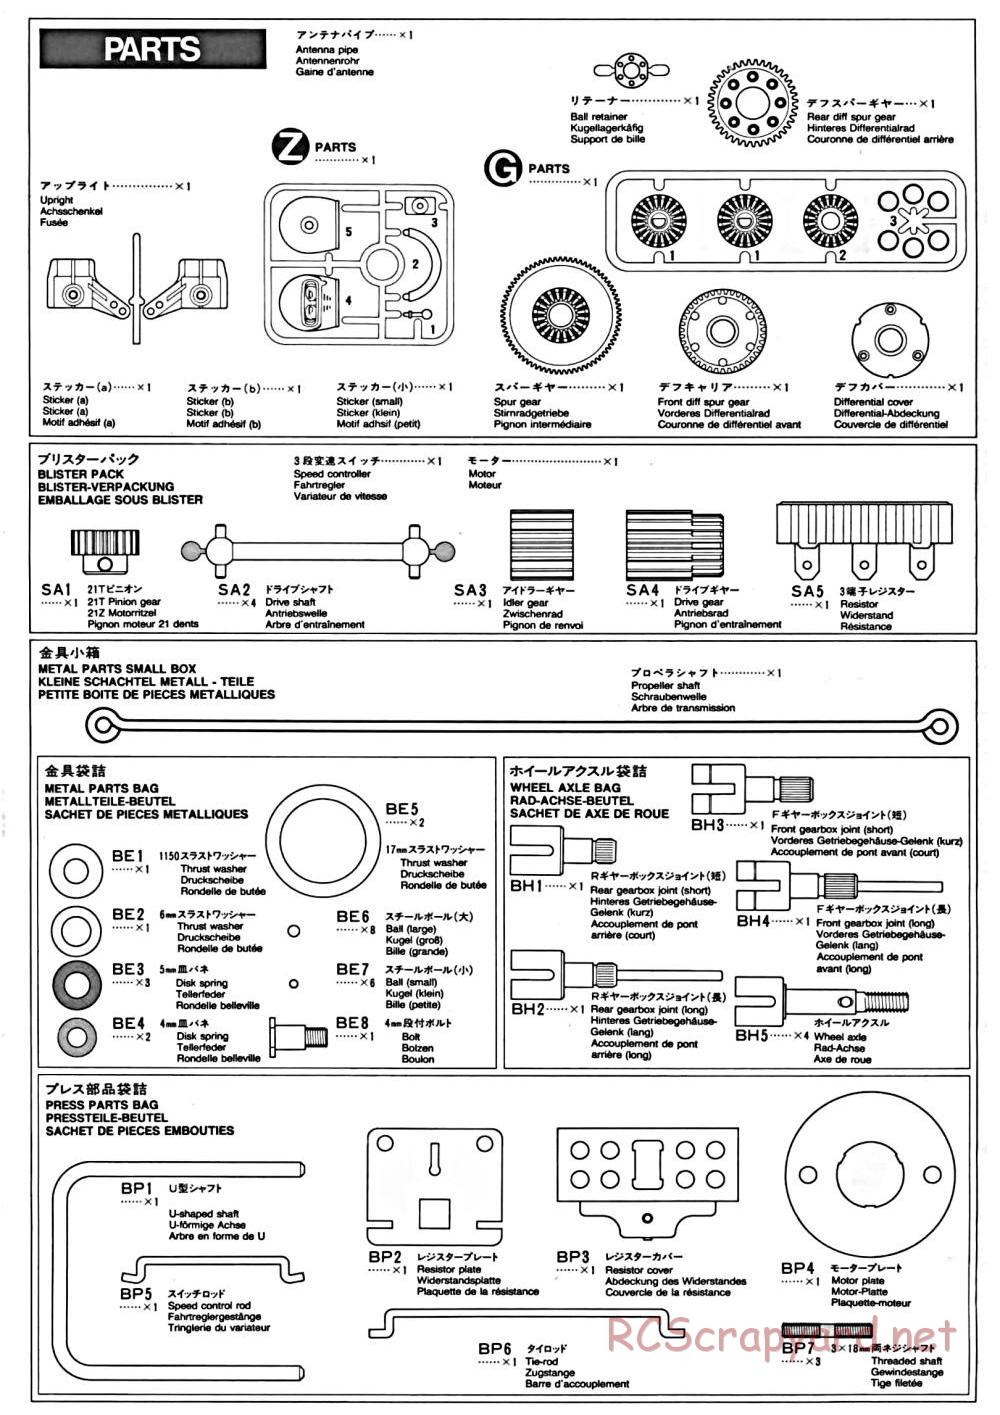 Tamiya - TA-01 Chassis - Manual - Page 16